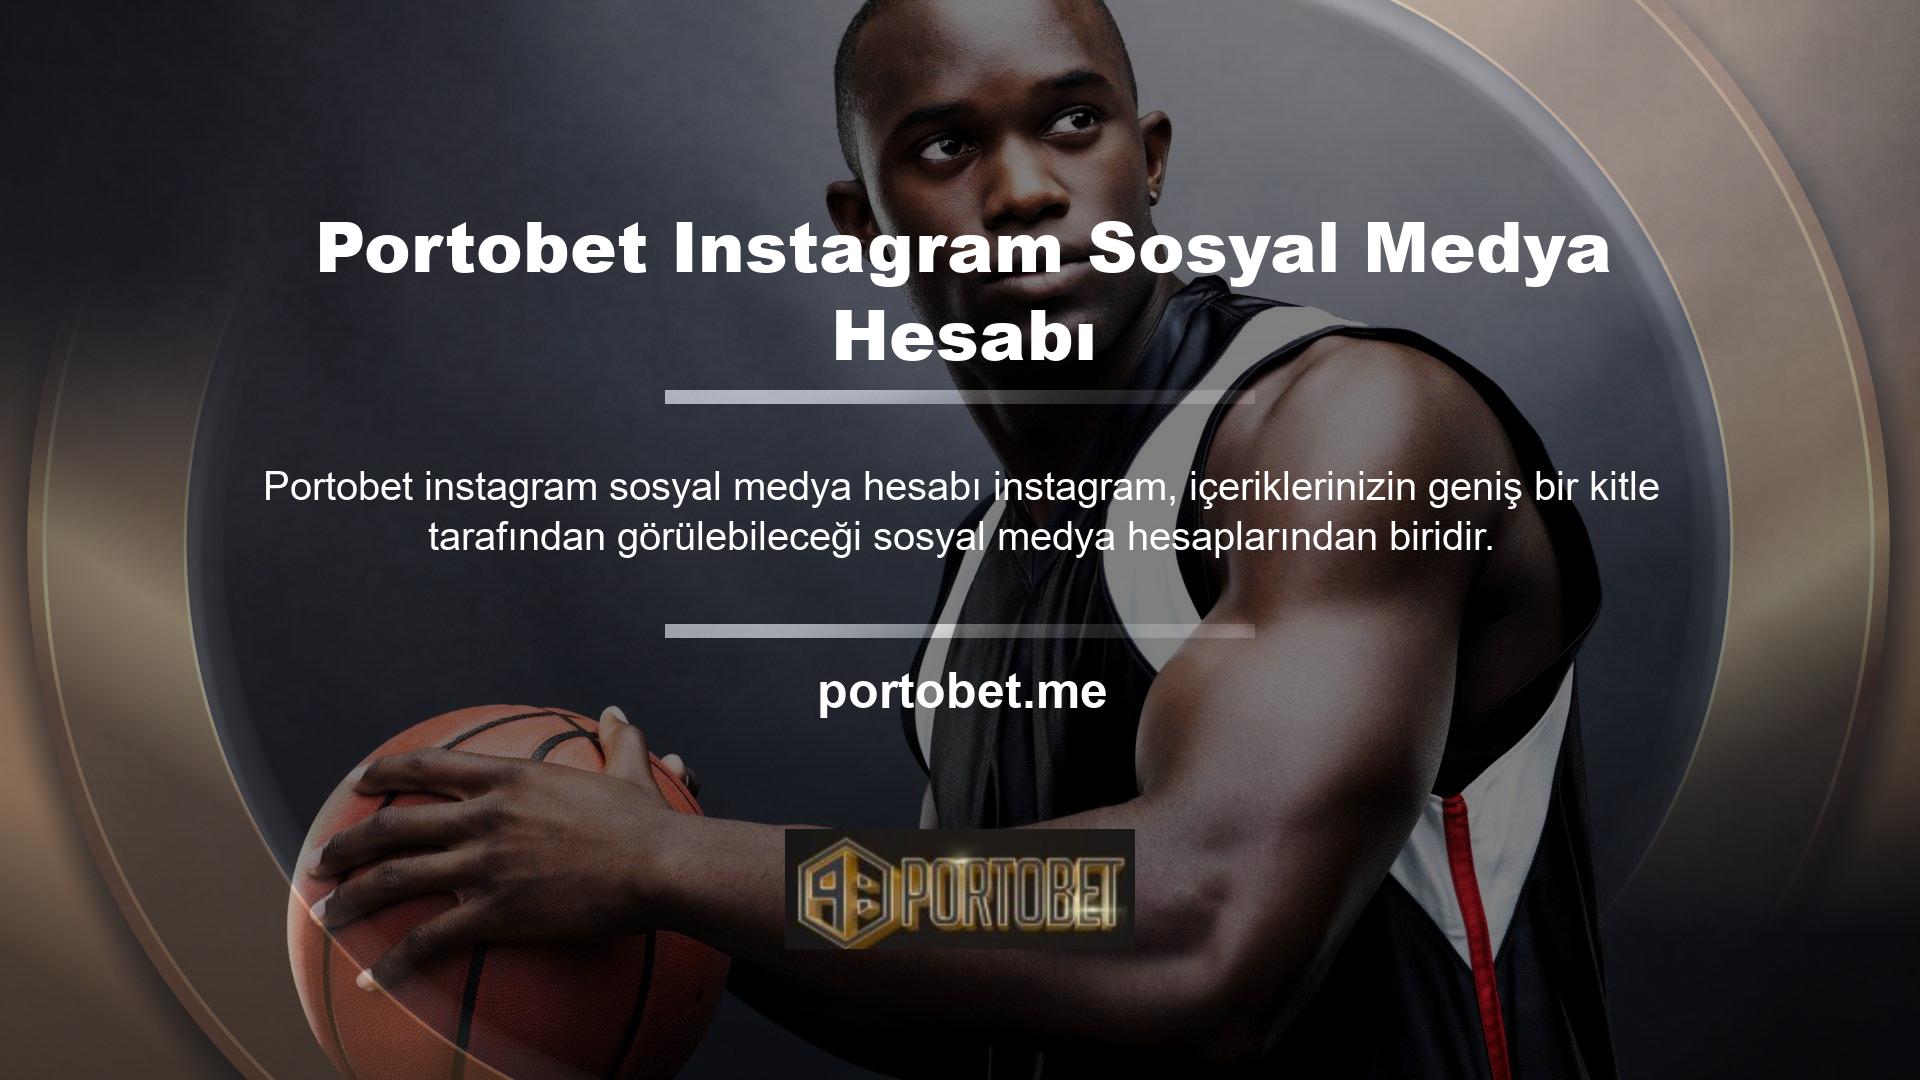 Çünkü Portobet bahis sitesi Instagram kullanıcıları için en kaliteli hesapları oluşturmaktadır